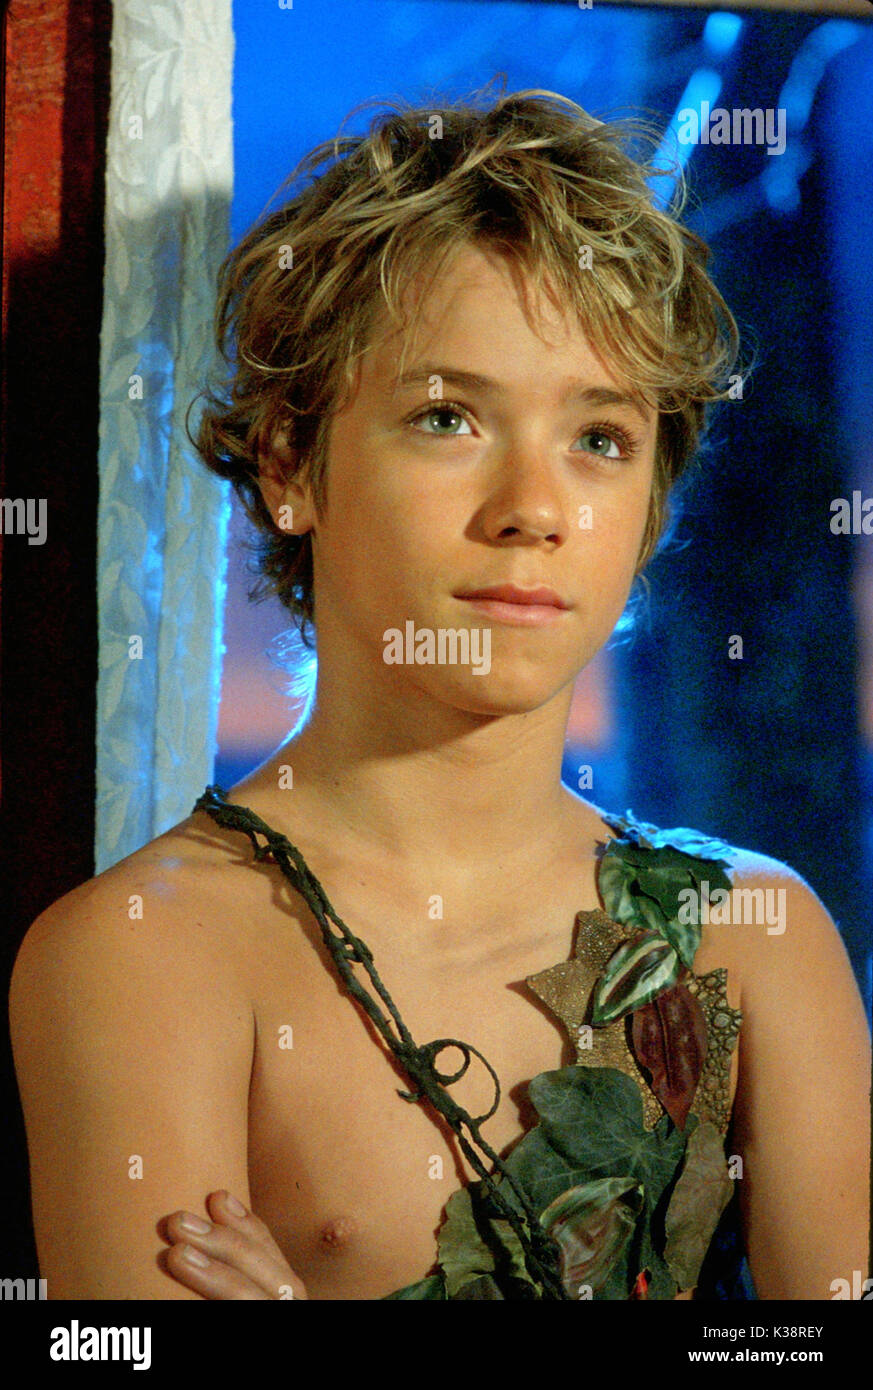 PETER PAN JEREMY SUMPTER as Peter Pan     Date: 2003 Stock Photo